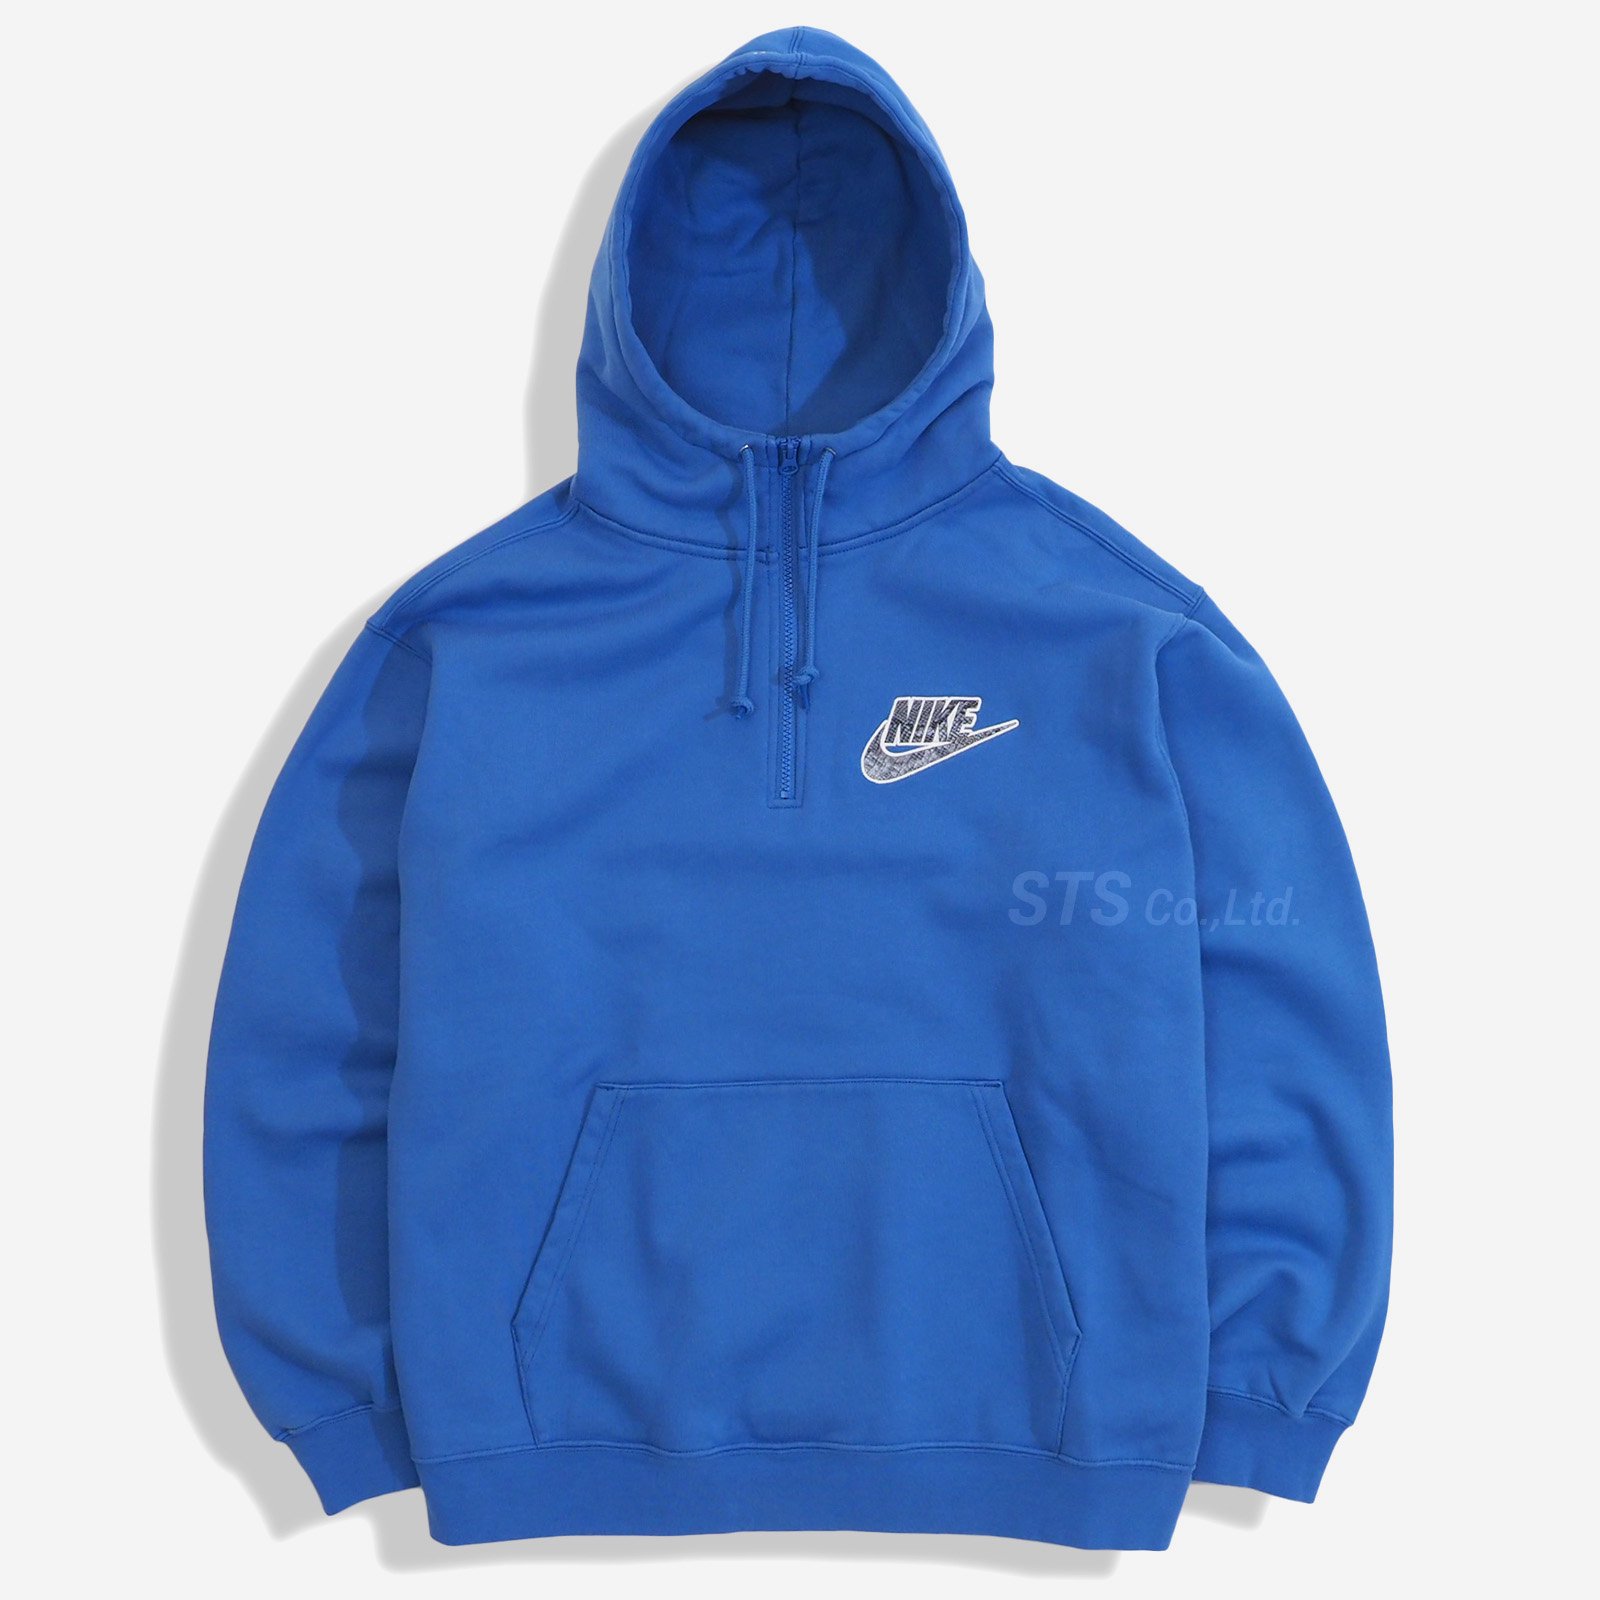 Supreme/Nike Half Zip Hooded Sweatshirt - ParkSIDER